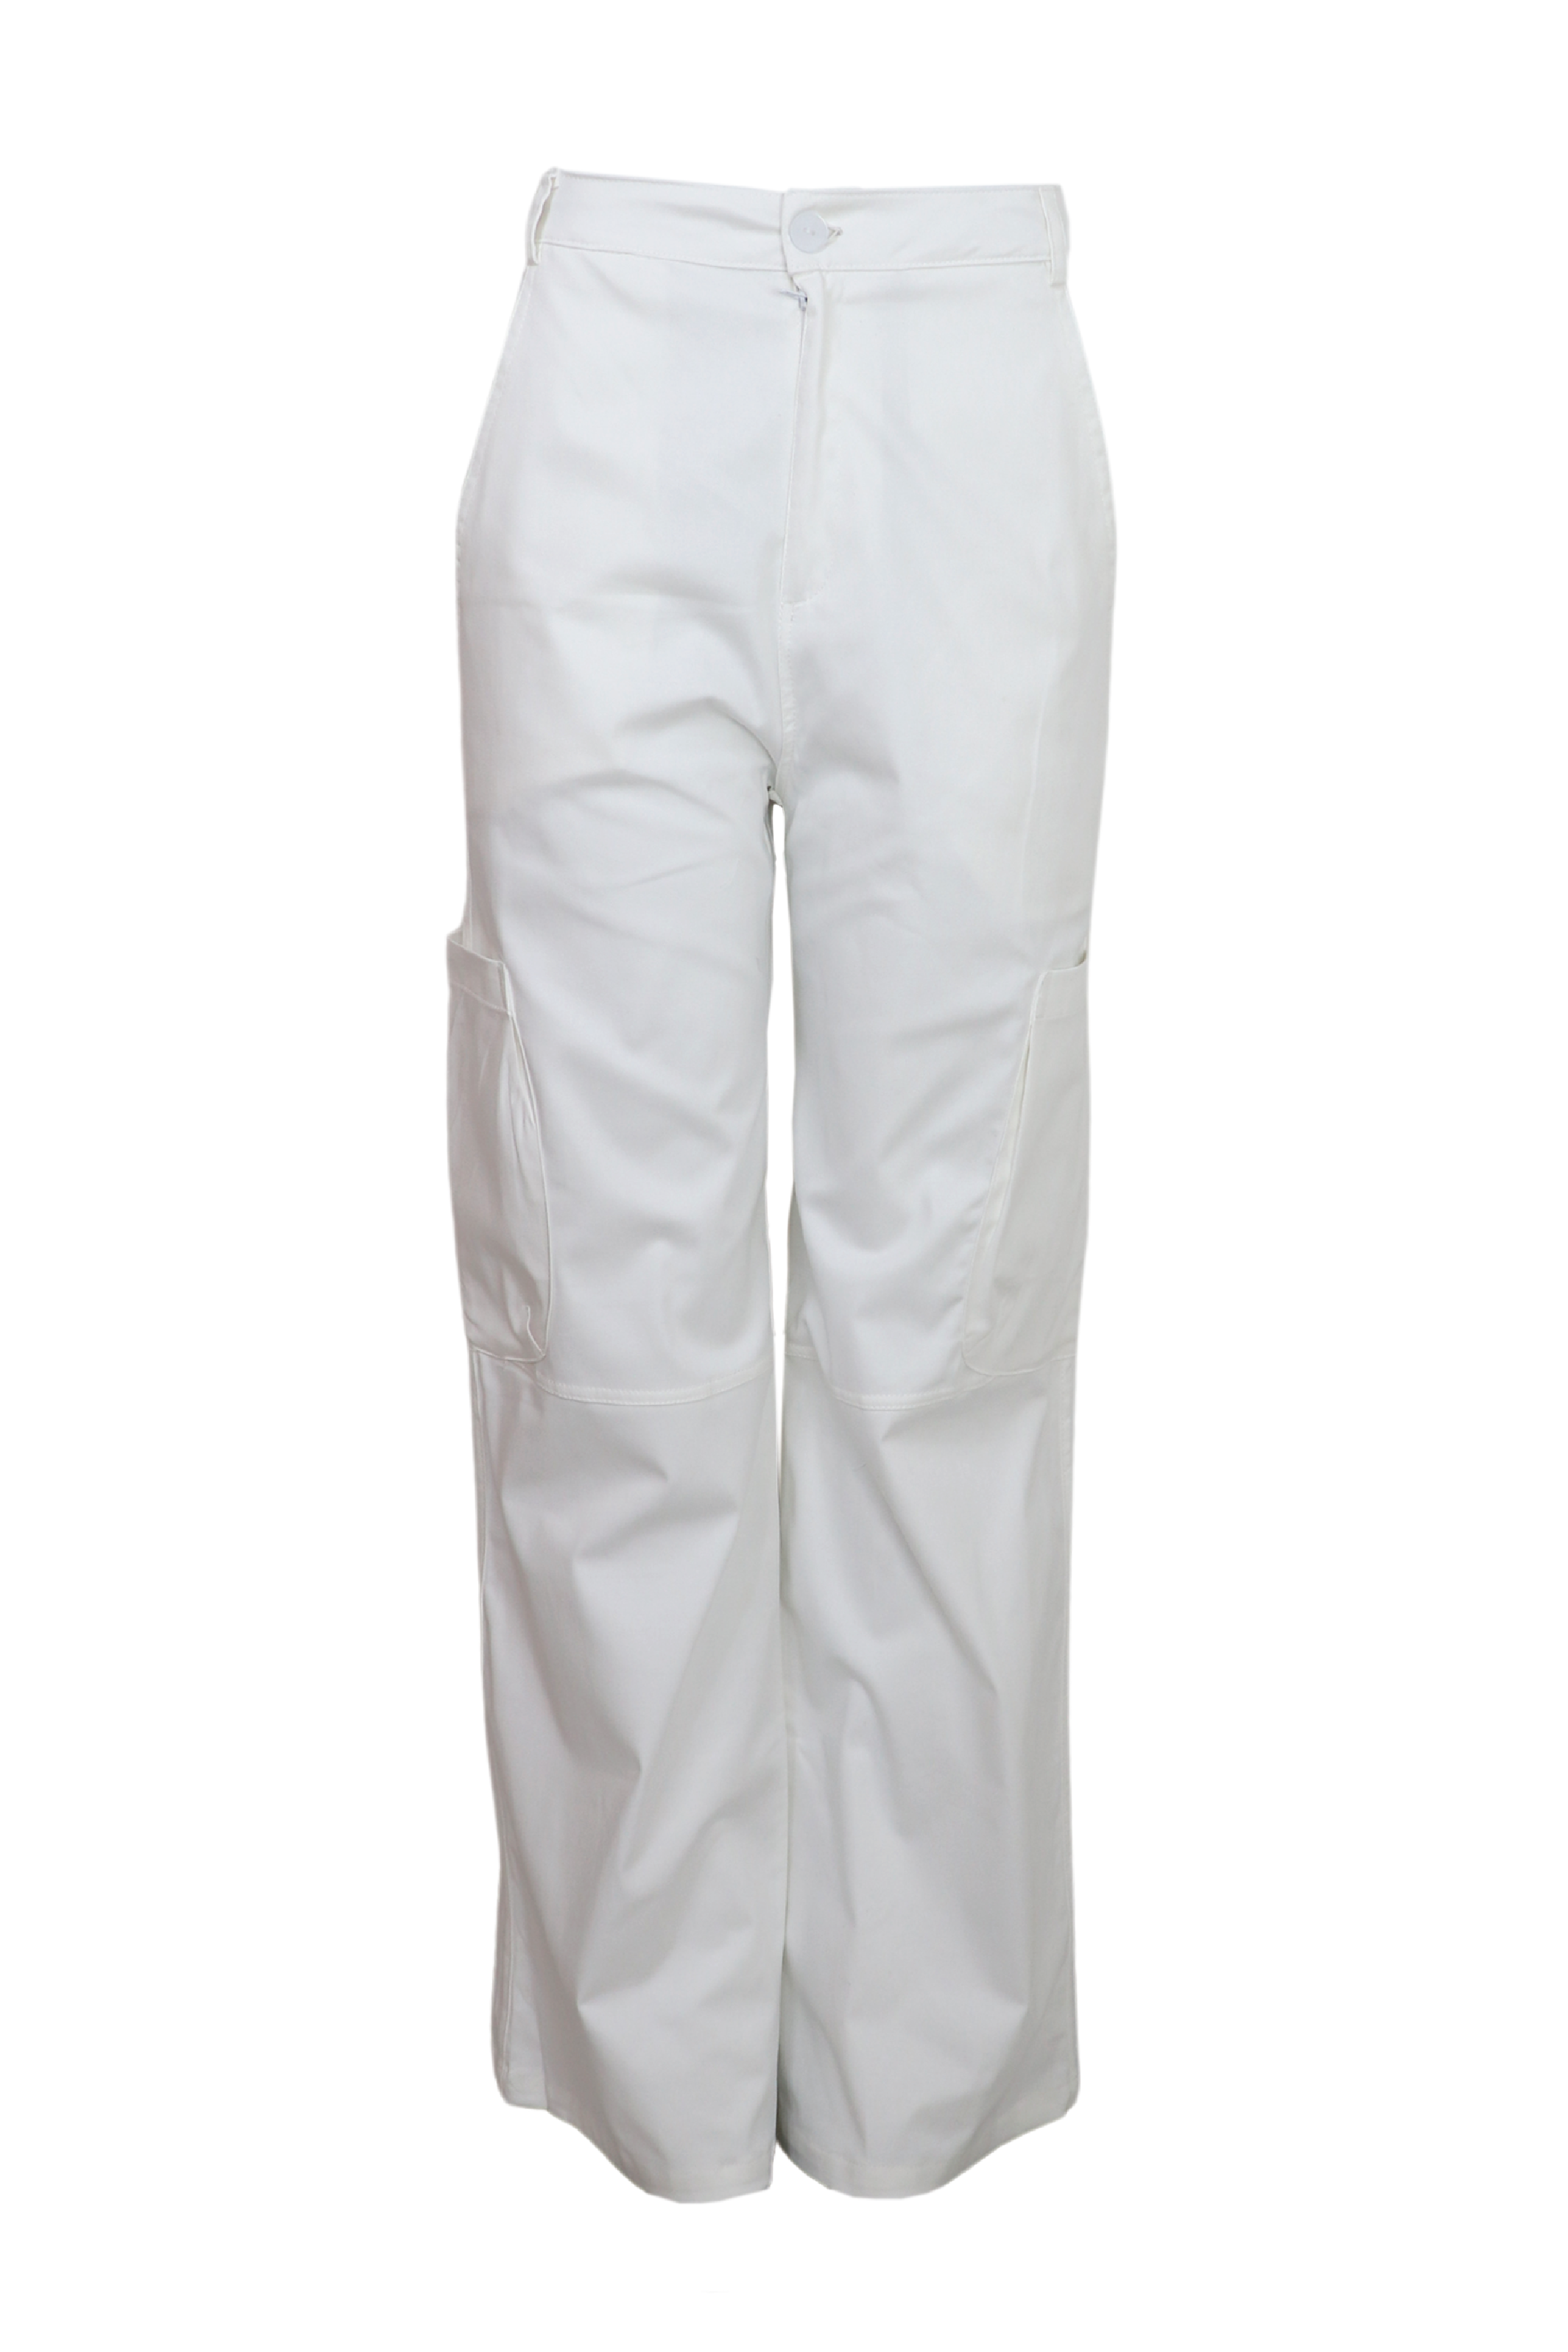 Pantalon tipo cargo blanco